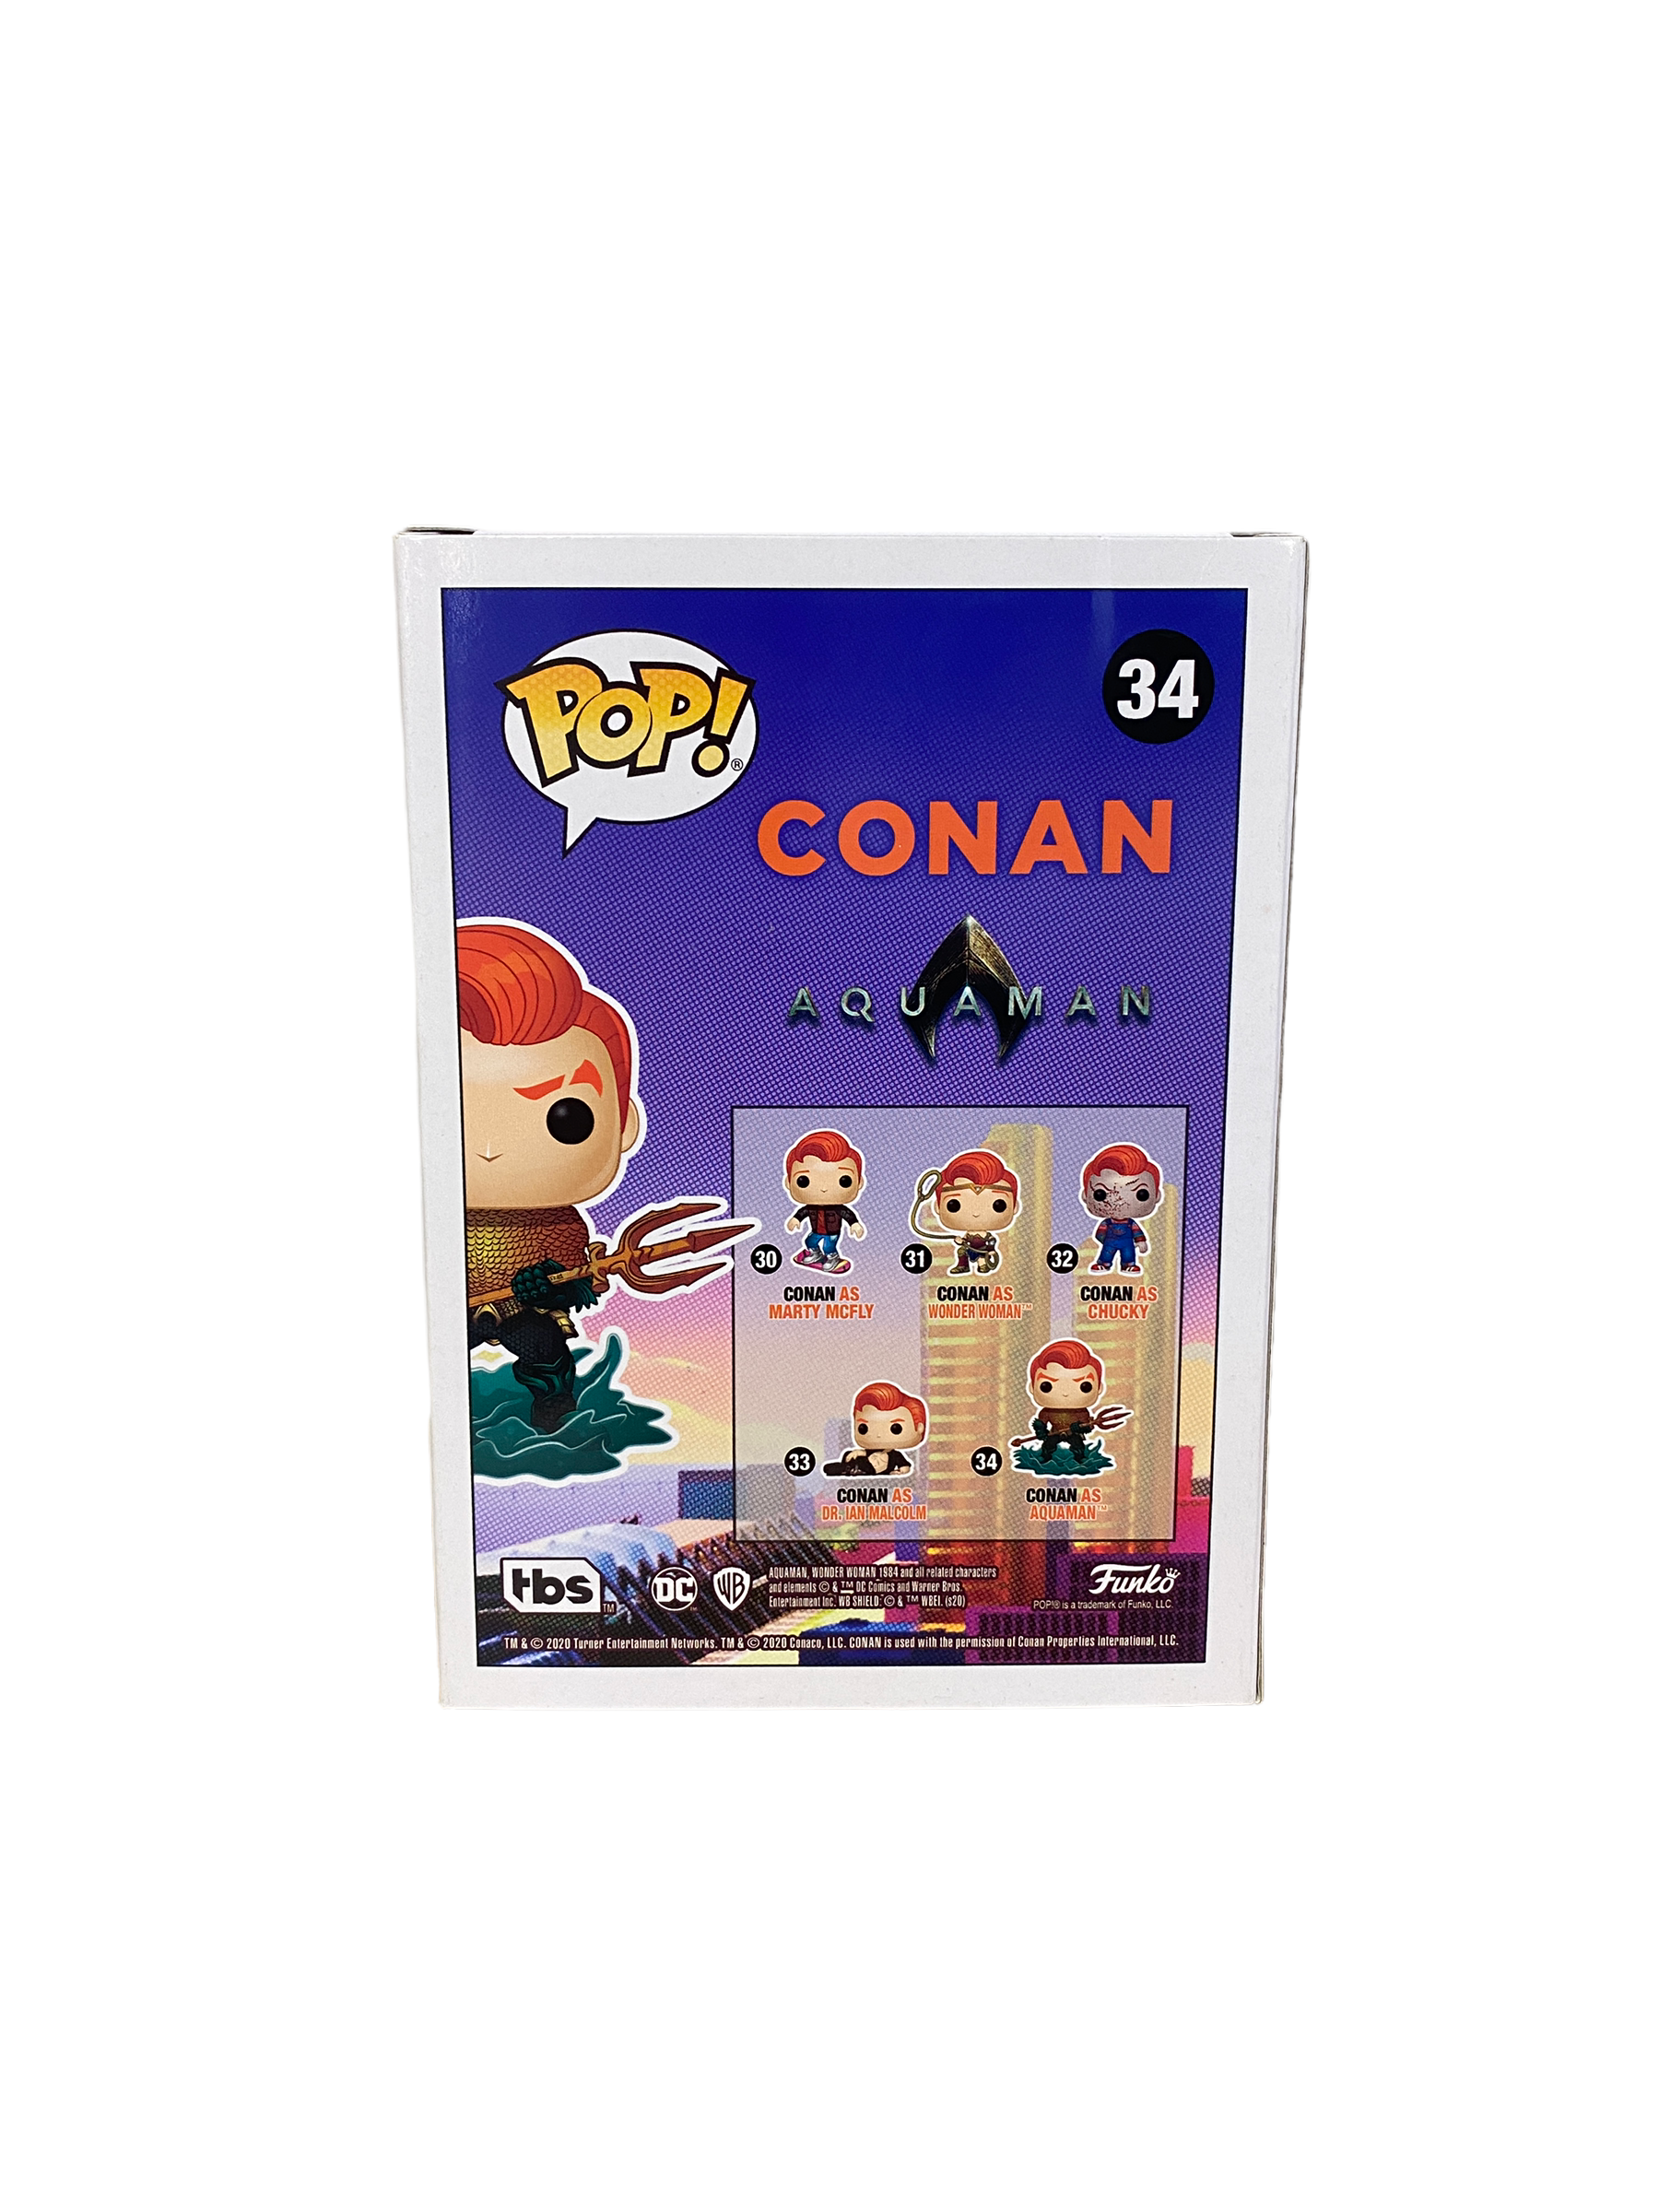 Conan as Aquaman #34 Funko Pop! - Conan - SDCC 2020 Team Coco Exclusive LE500 Pcs - Condition 8.5/10